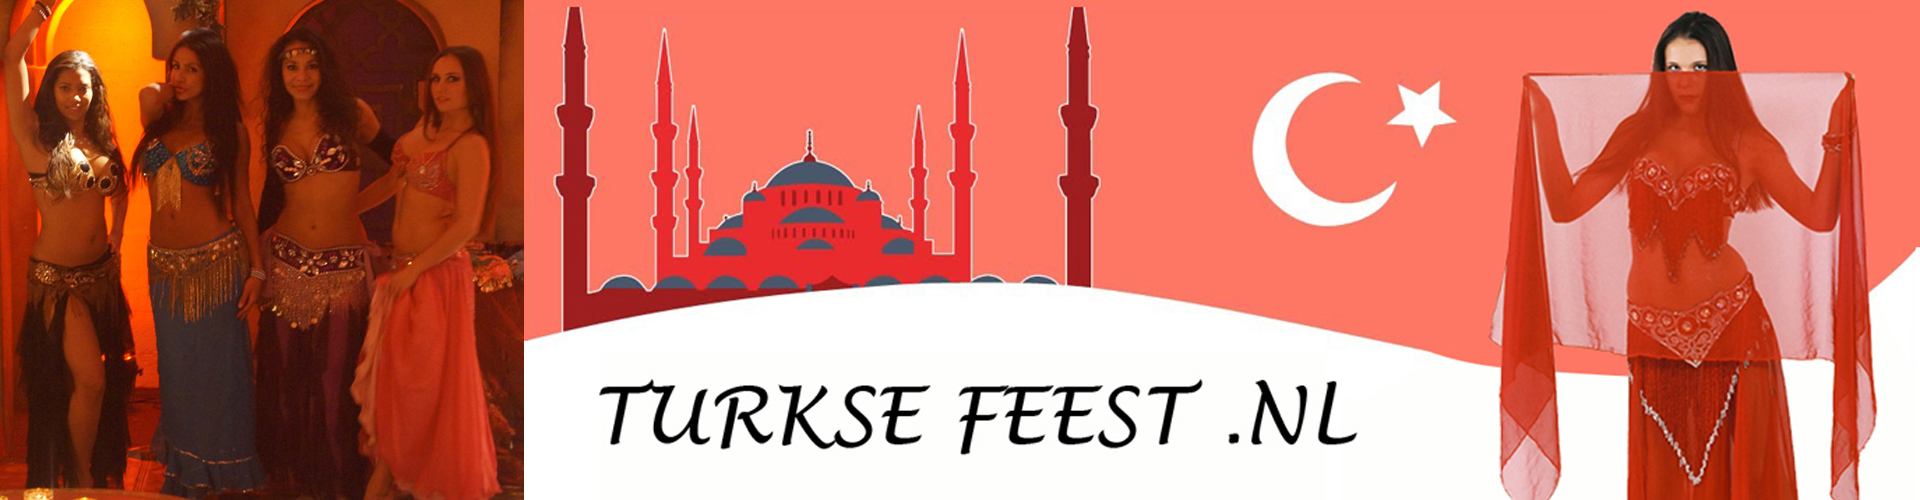 Turkse festival